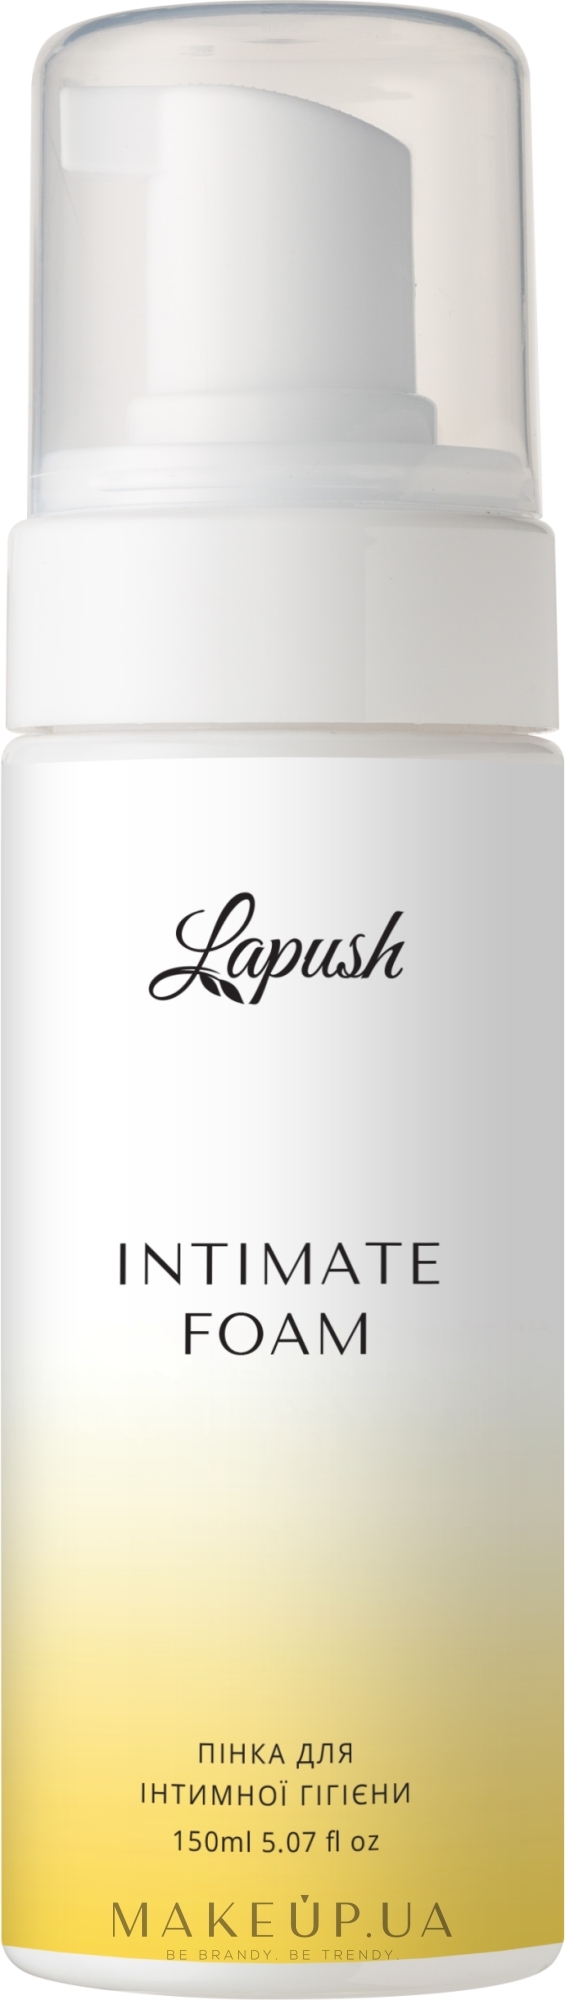 Пінка для інтимної гігієни - Lapush Gentle Foam For Intimate Hygiene — фото 150ml